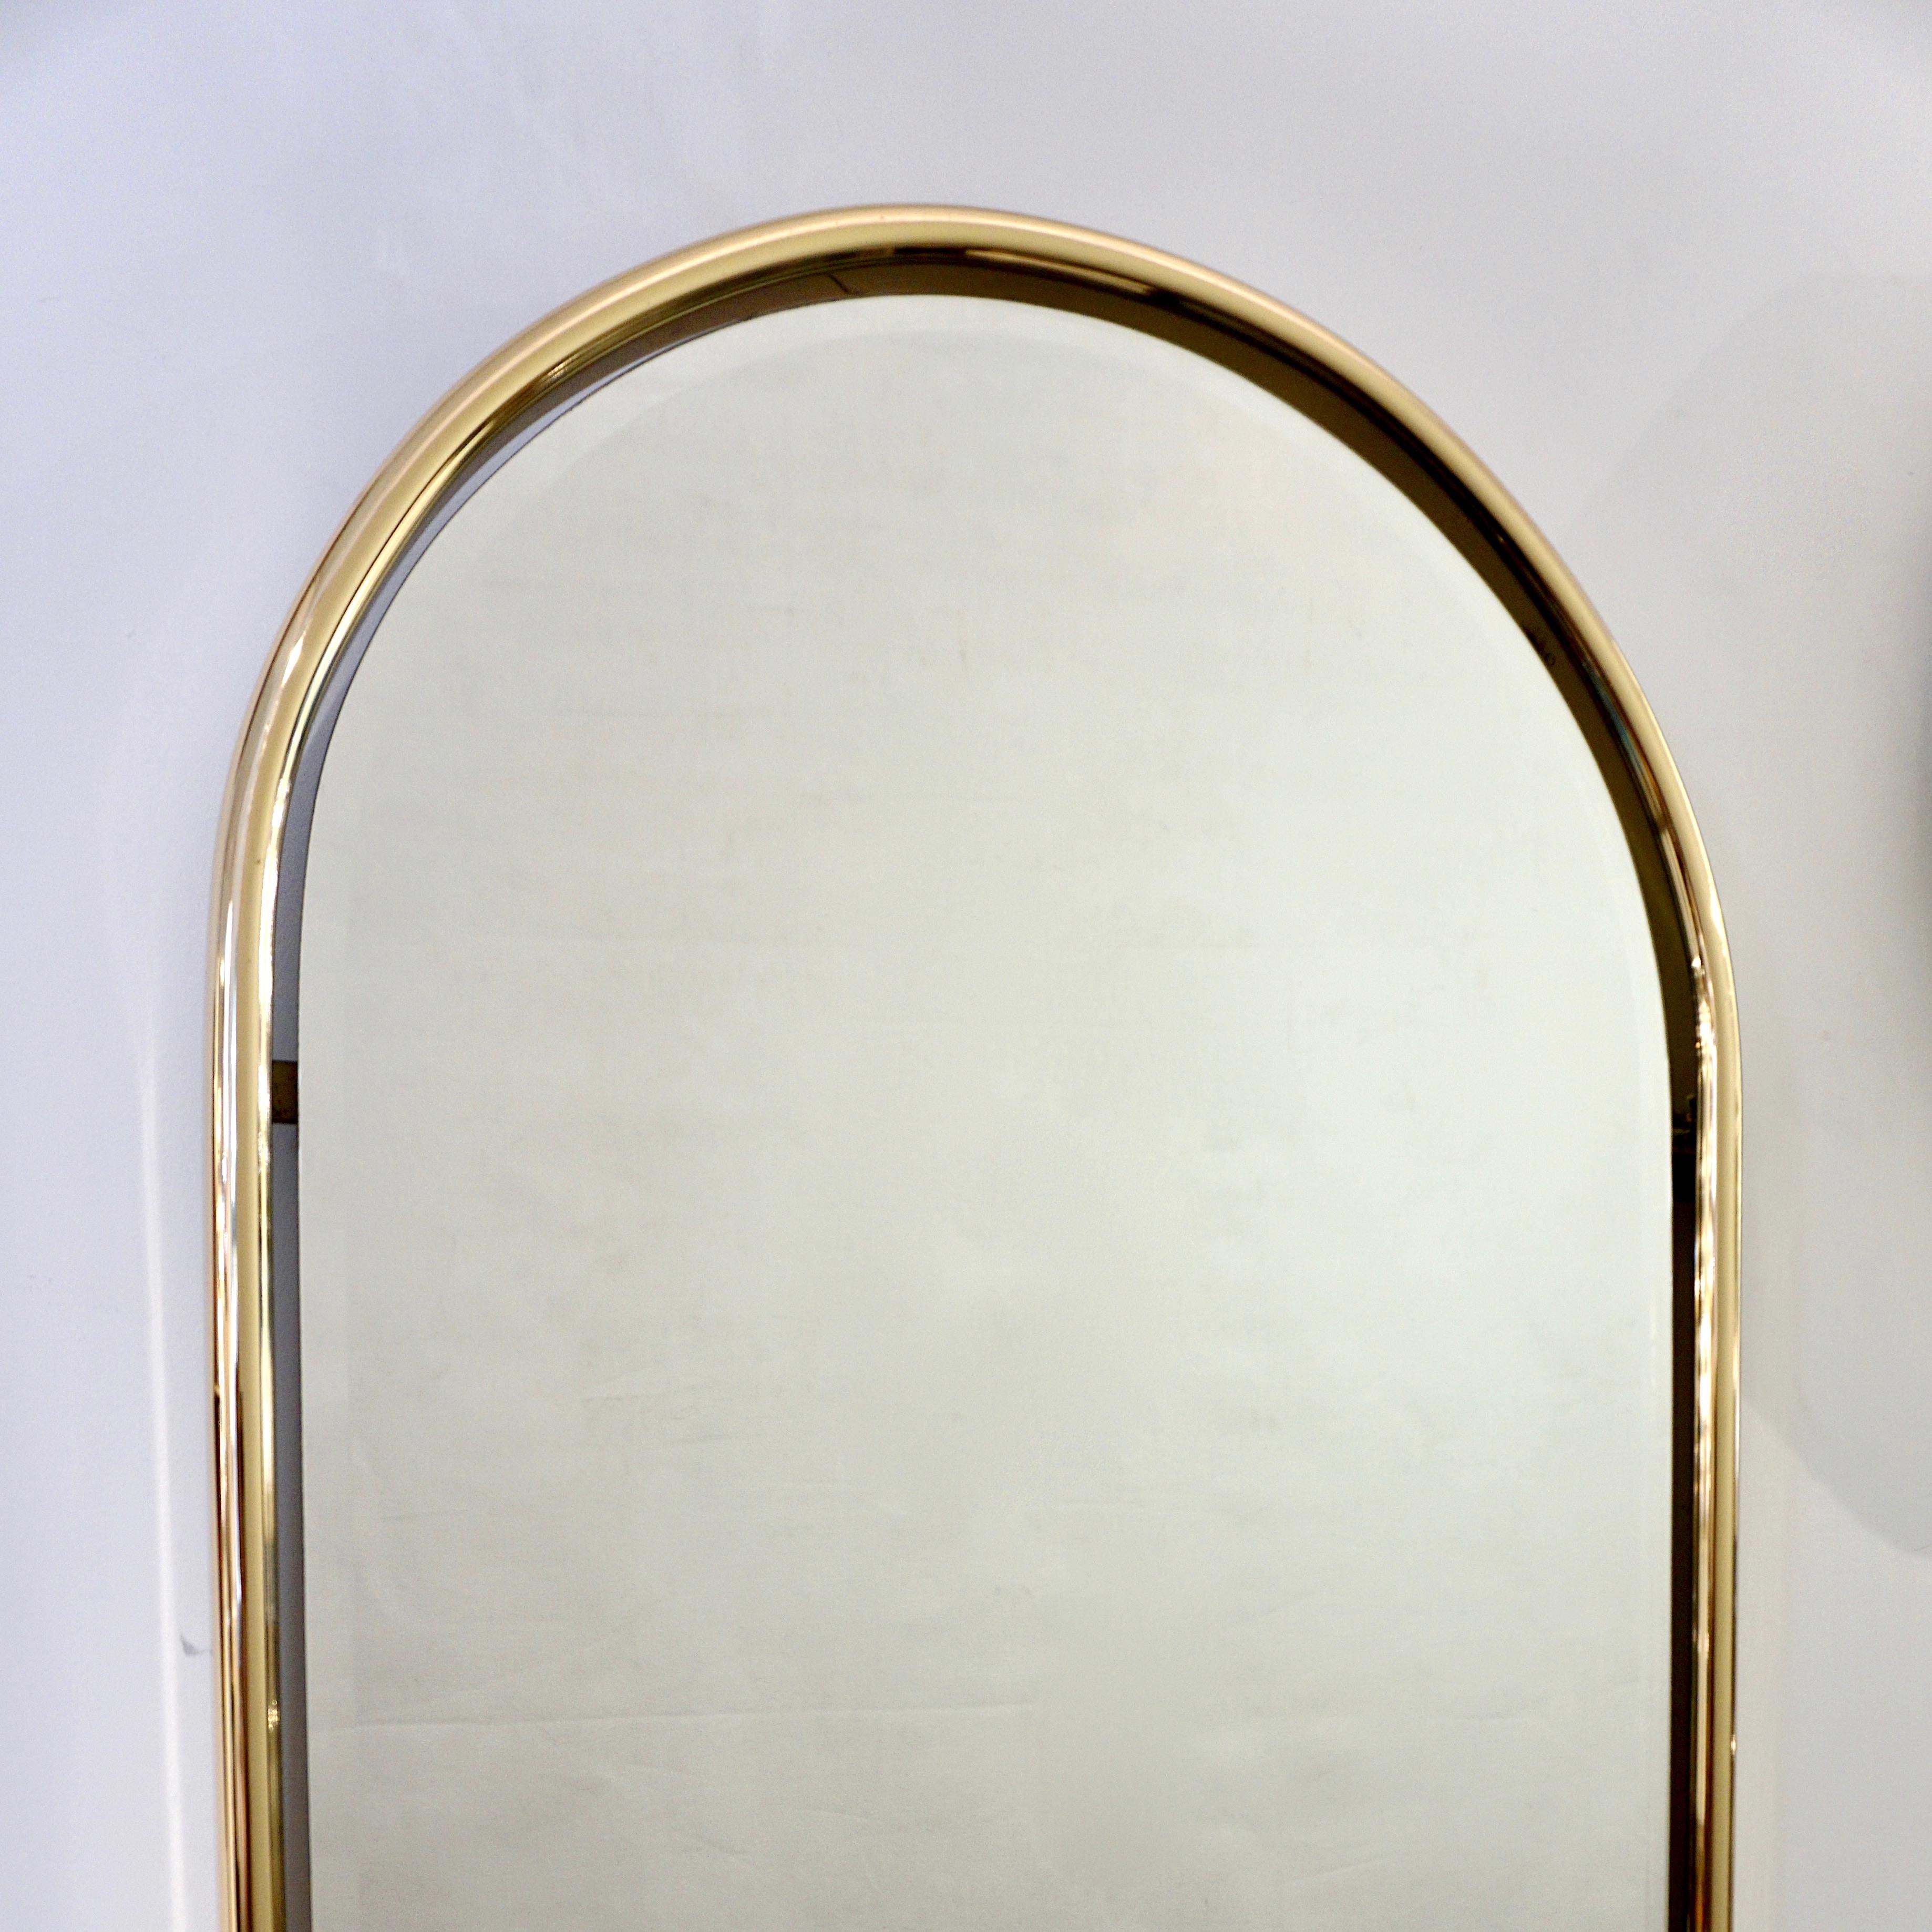 3 verfügbar - Handgefertigter italienischer Vintage-Spiegel im Art-Déco-Design mit einem eleganten, oben abgerundeten Messingrahmen, der einen freistehenden Spiegel einschließt, der einen schwebenden Effekt erzeugt.
Die Spiegelplatte endet in einer